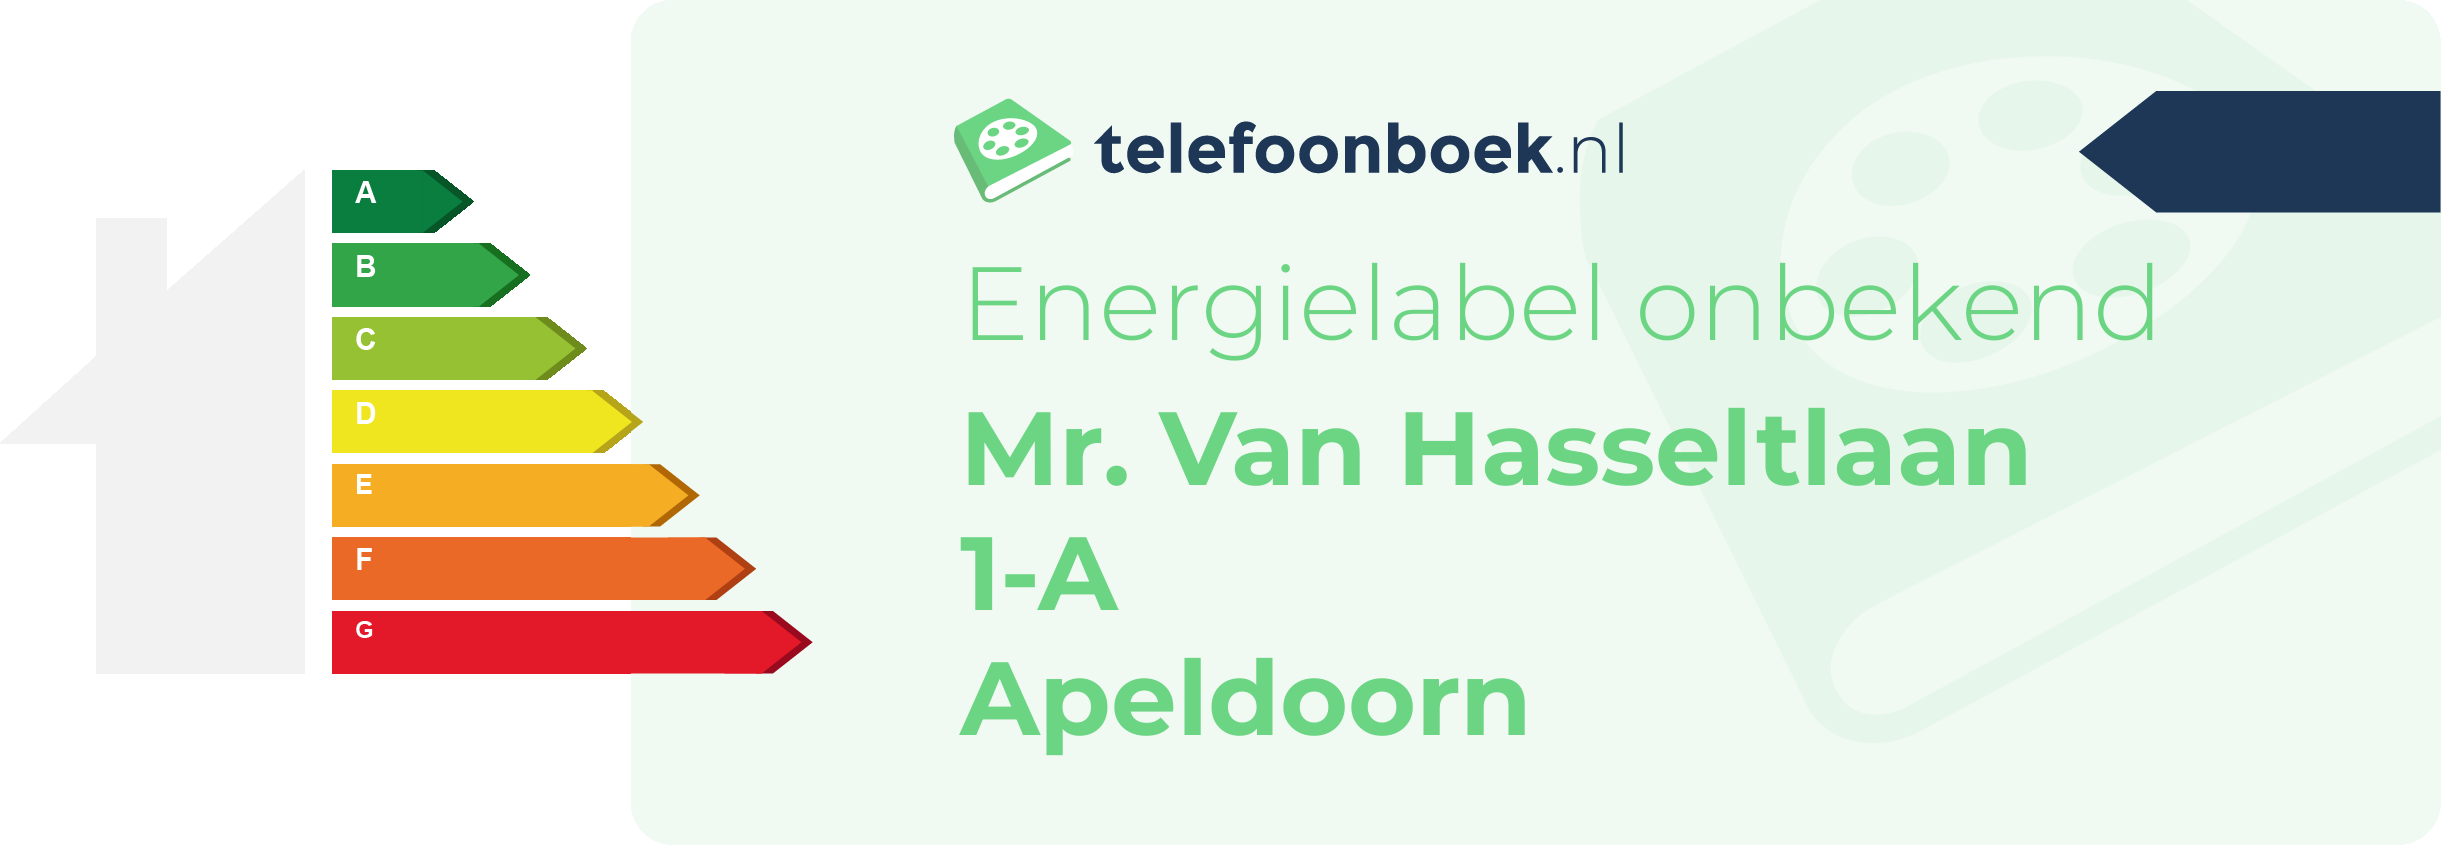 Energielabel Mr. Van Hasseltlaan 1-A Apeldoorn